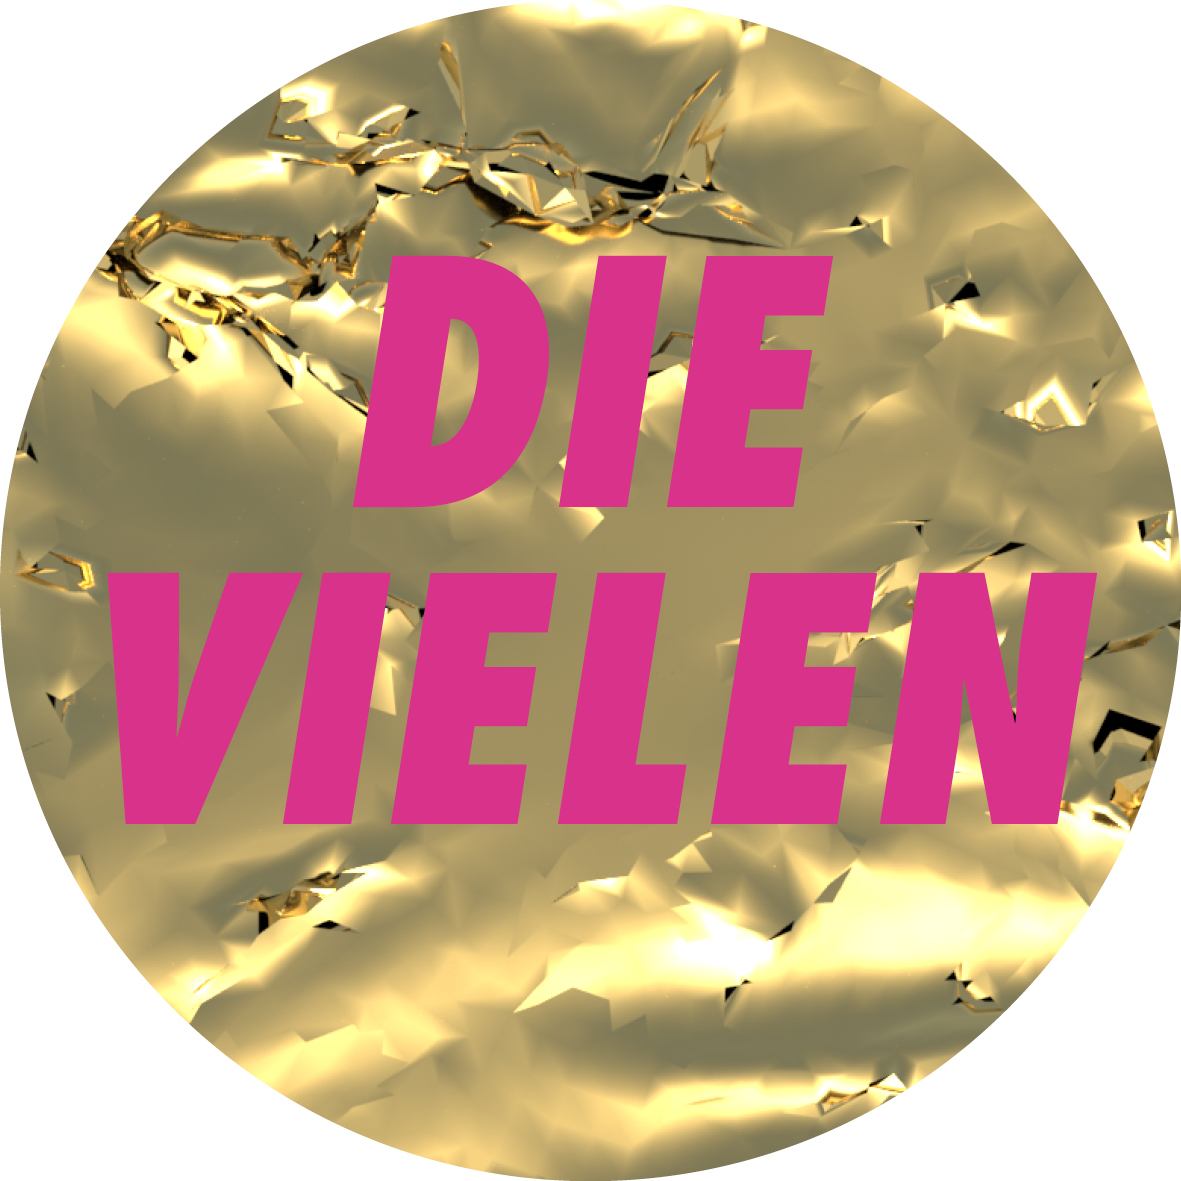 logo-dv-1